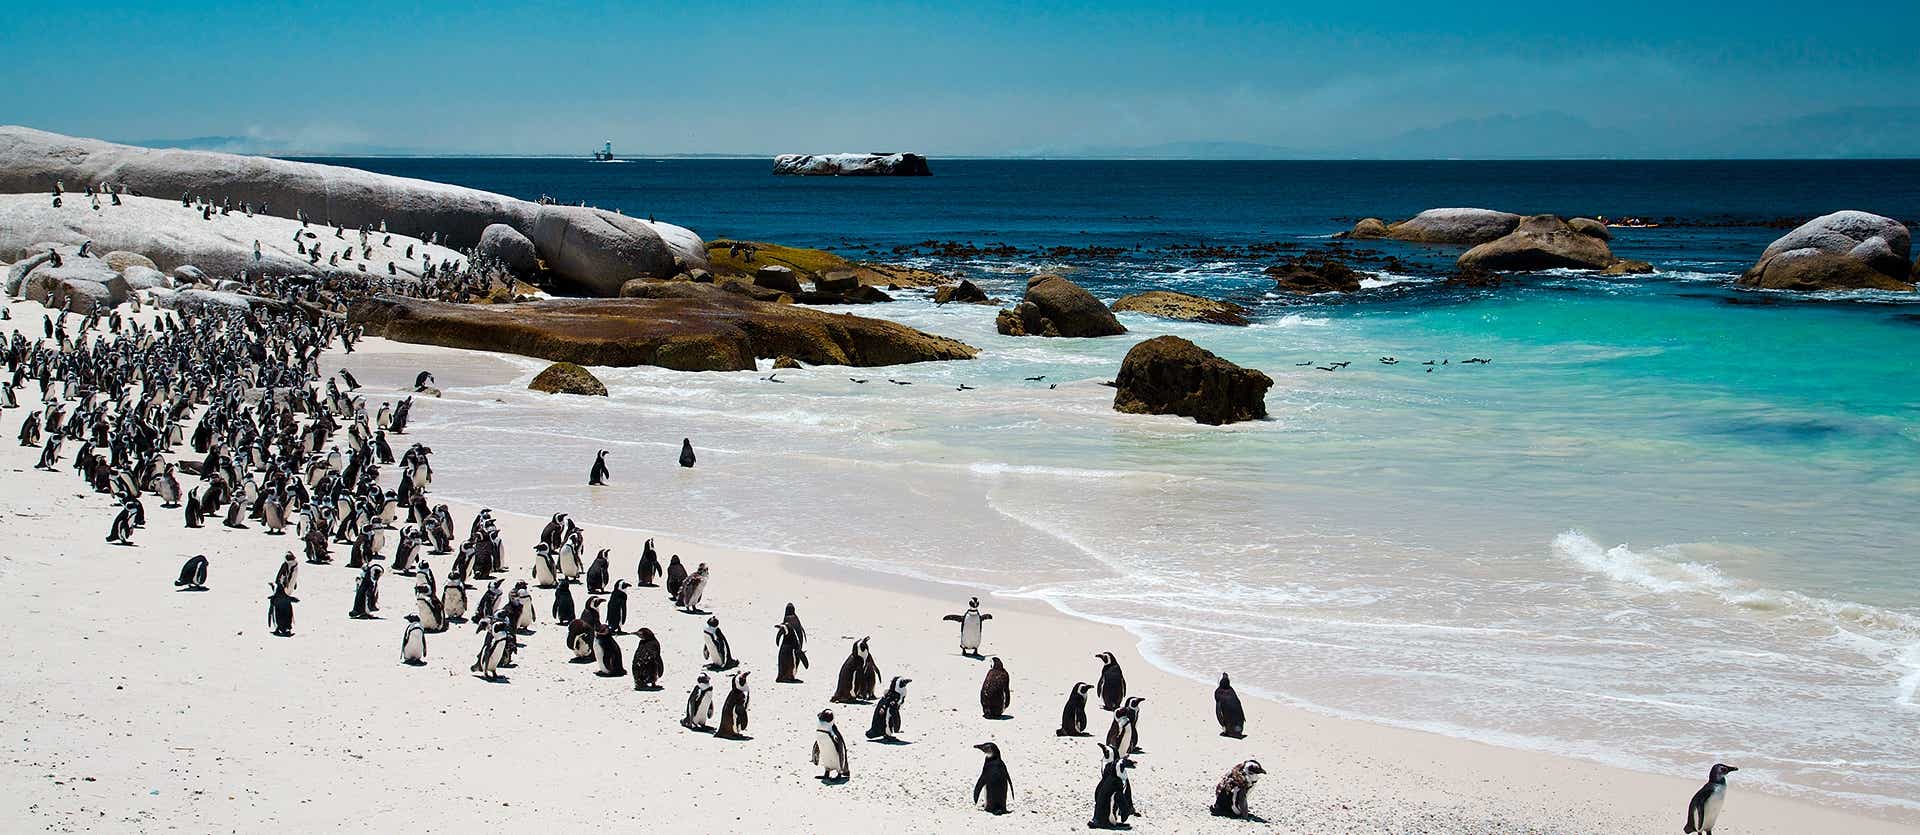 Colonia de pingüinos <span class="iconos separador"></span> Playa de Boulders <span class="iconos separador"></span> Ciudad del Cabo <span class="iconos separador"></span> Sudáfrica